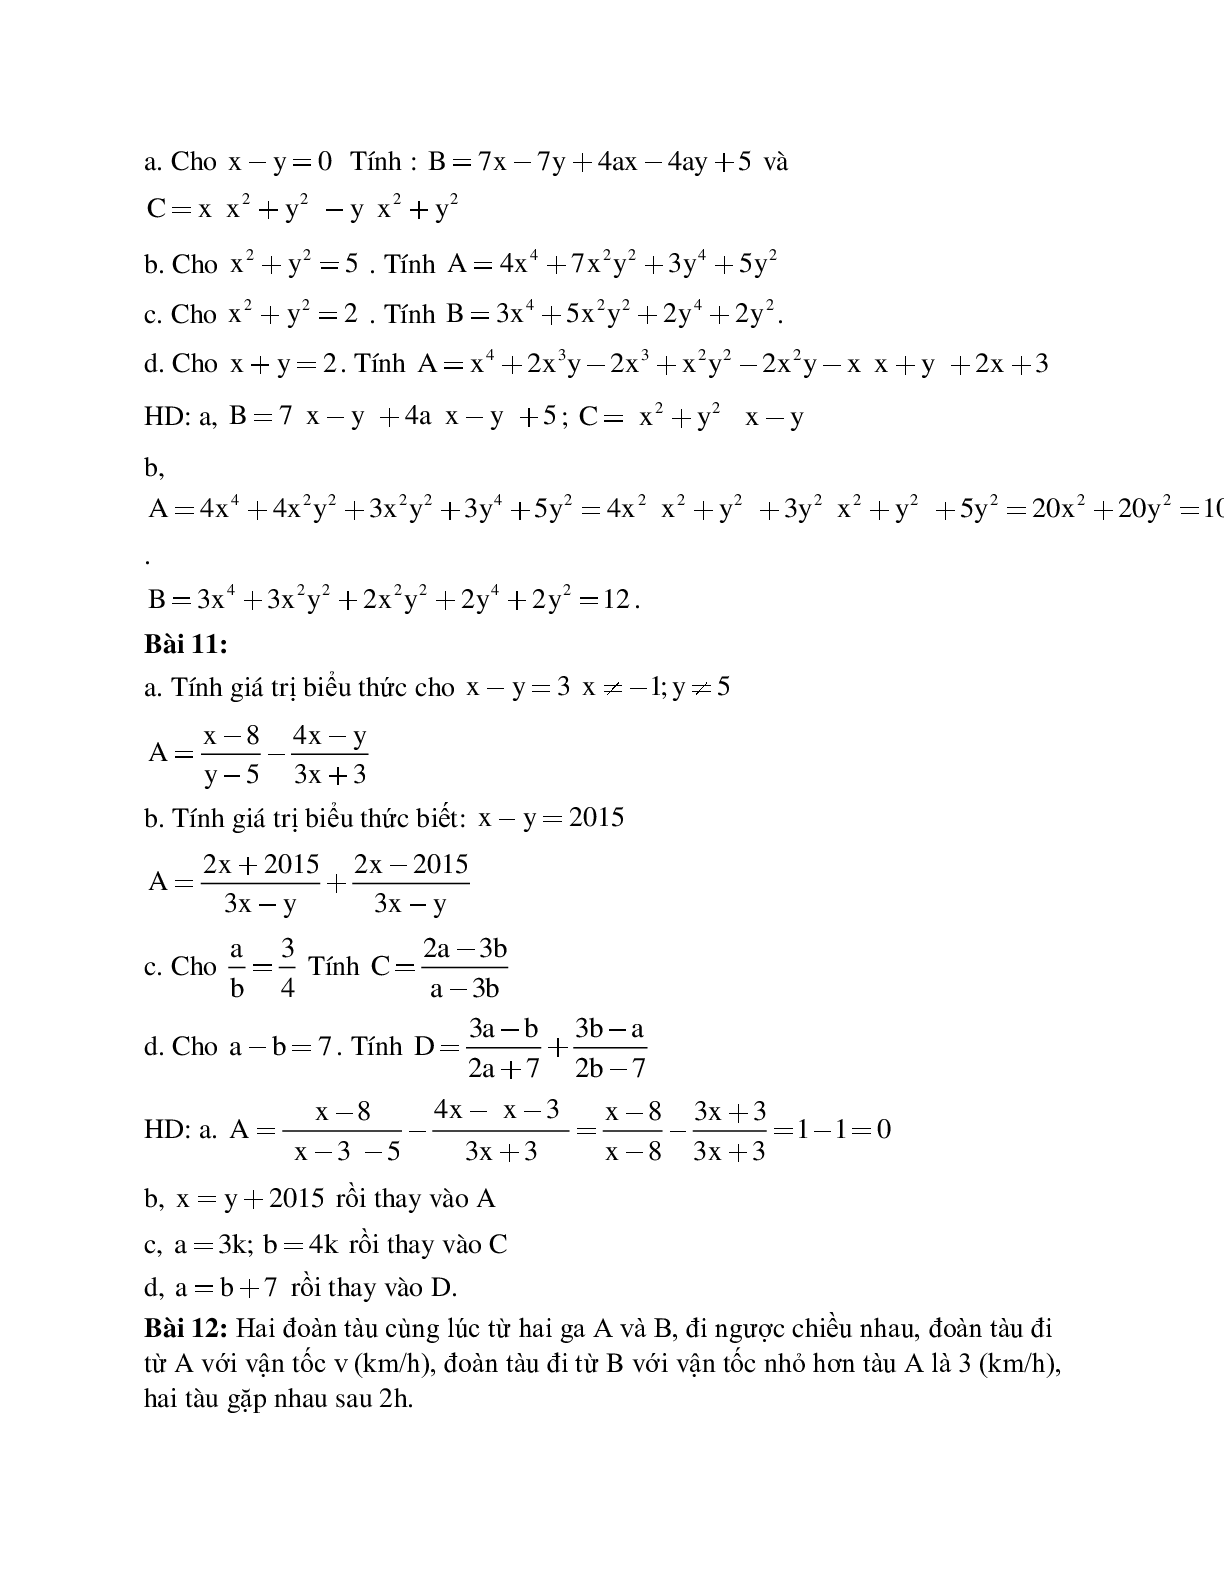 Cách giải Tính giá trị biểu thức đại số (trang 4)